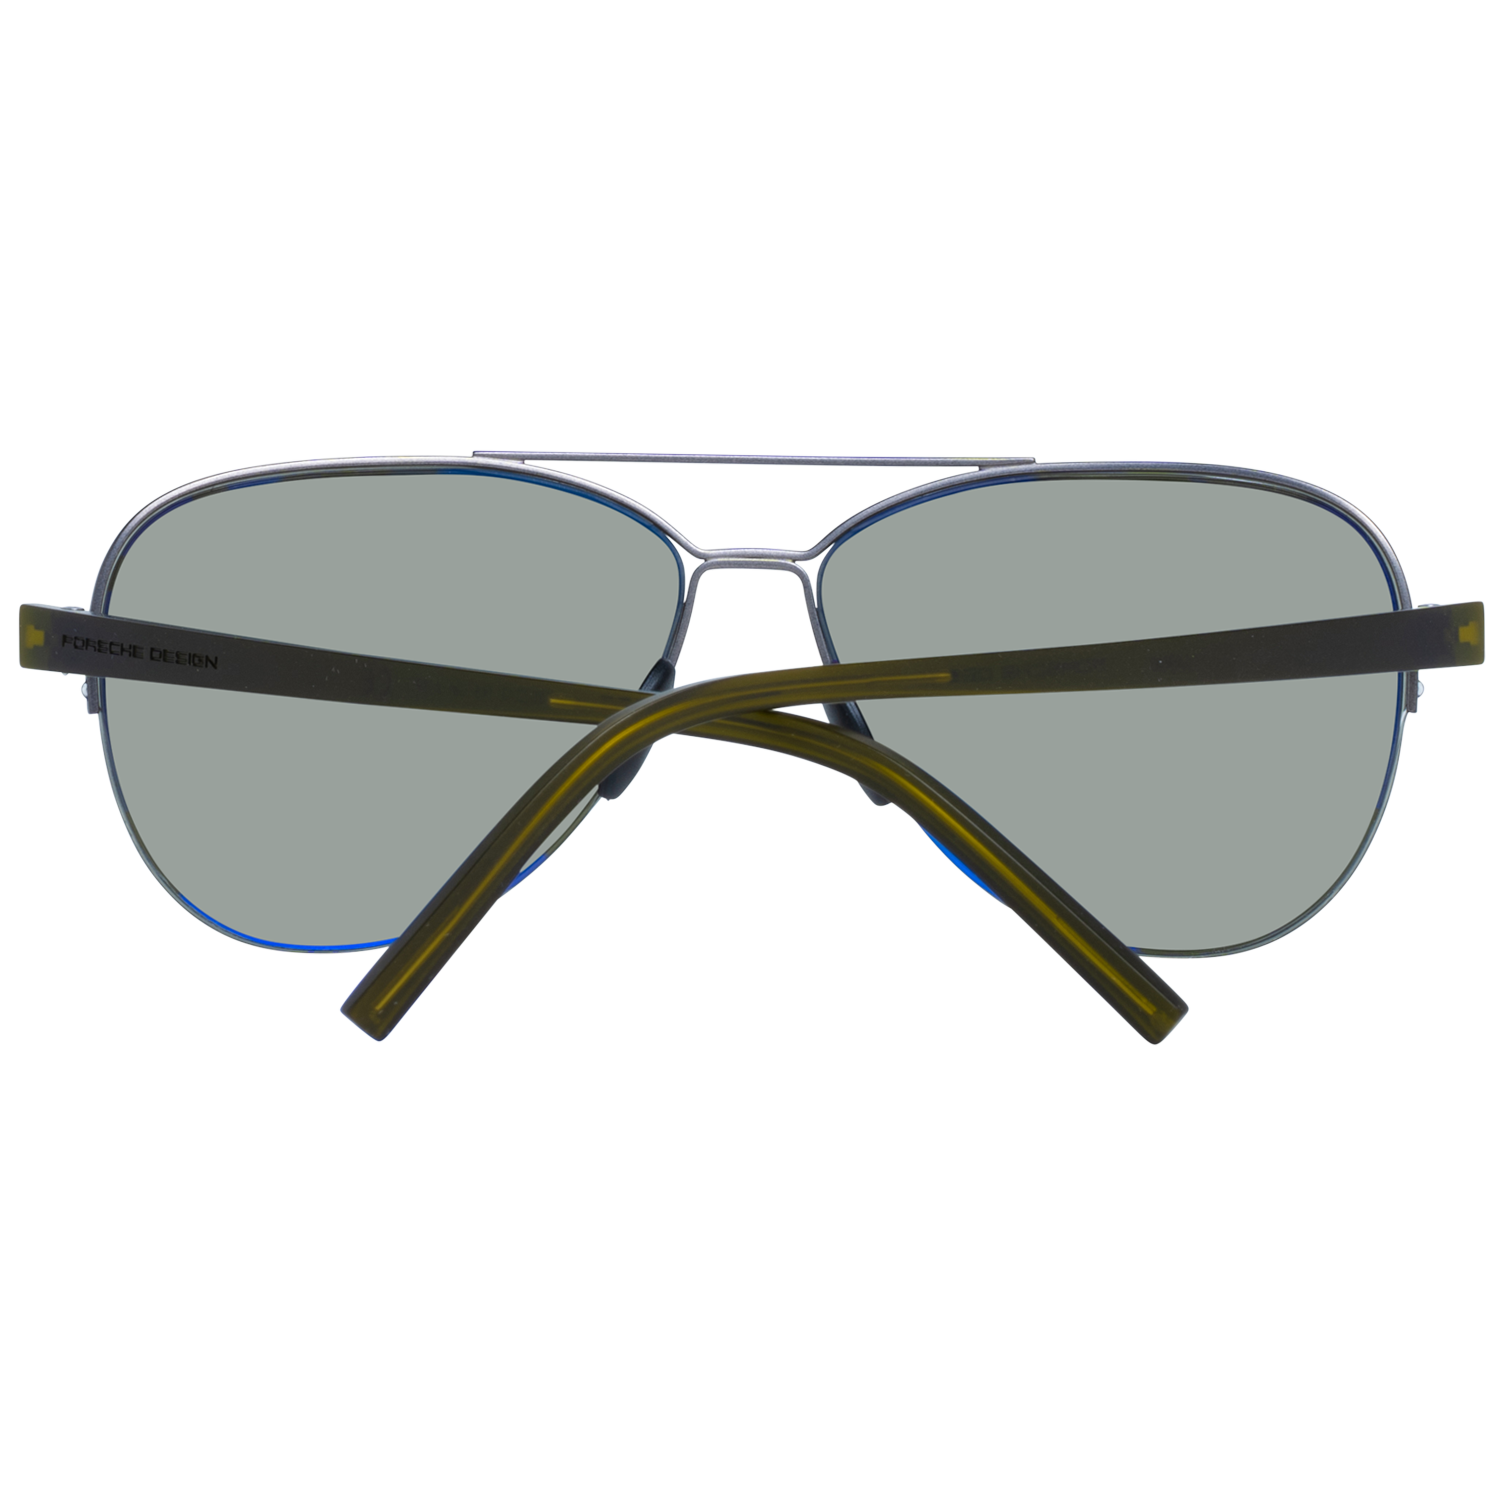 Porsche Design Sunglasses Porsche Design Sunglasses P8676 C 60 Polarized Eyeglasses Eyewear UK USA Australia 